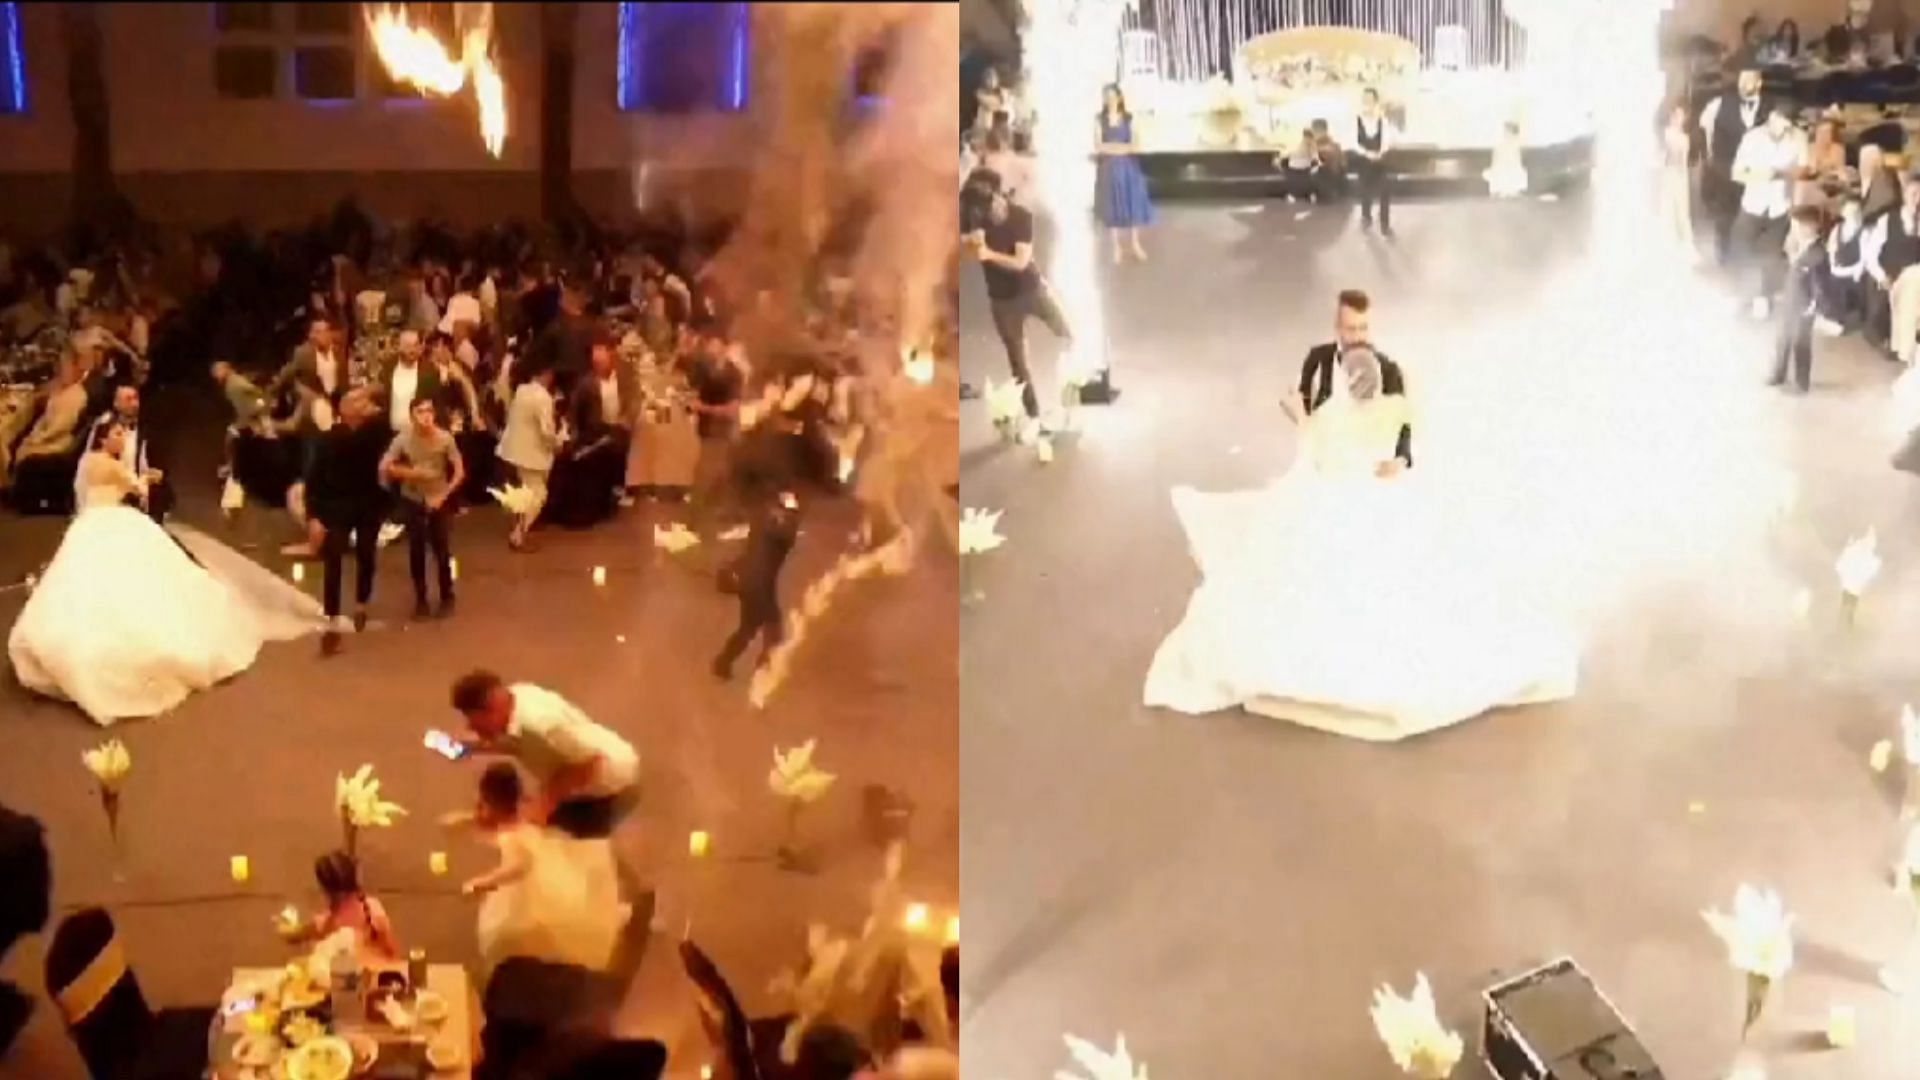 "Pyrotechnics do not belong indoors" Iraq wedding fire video detailing